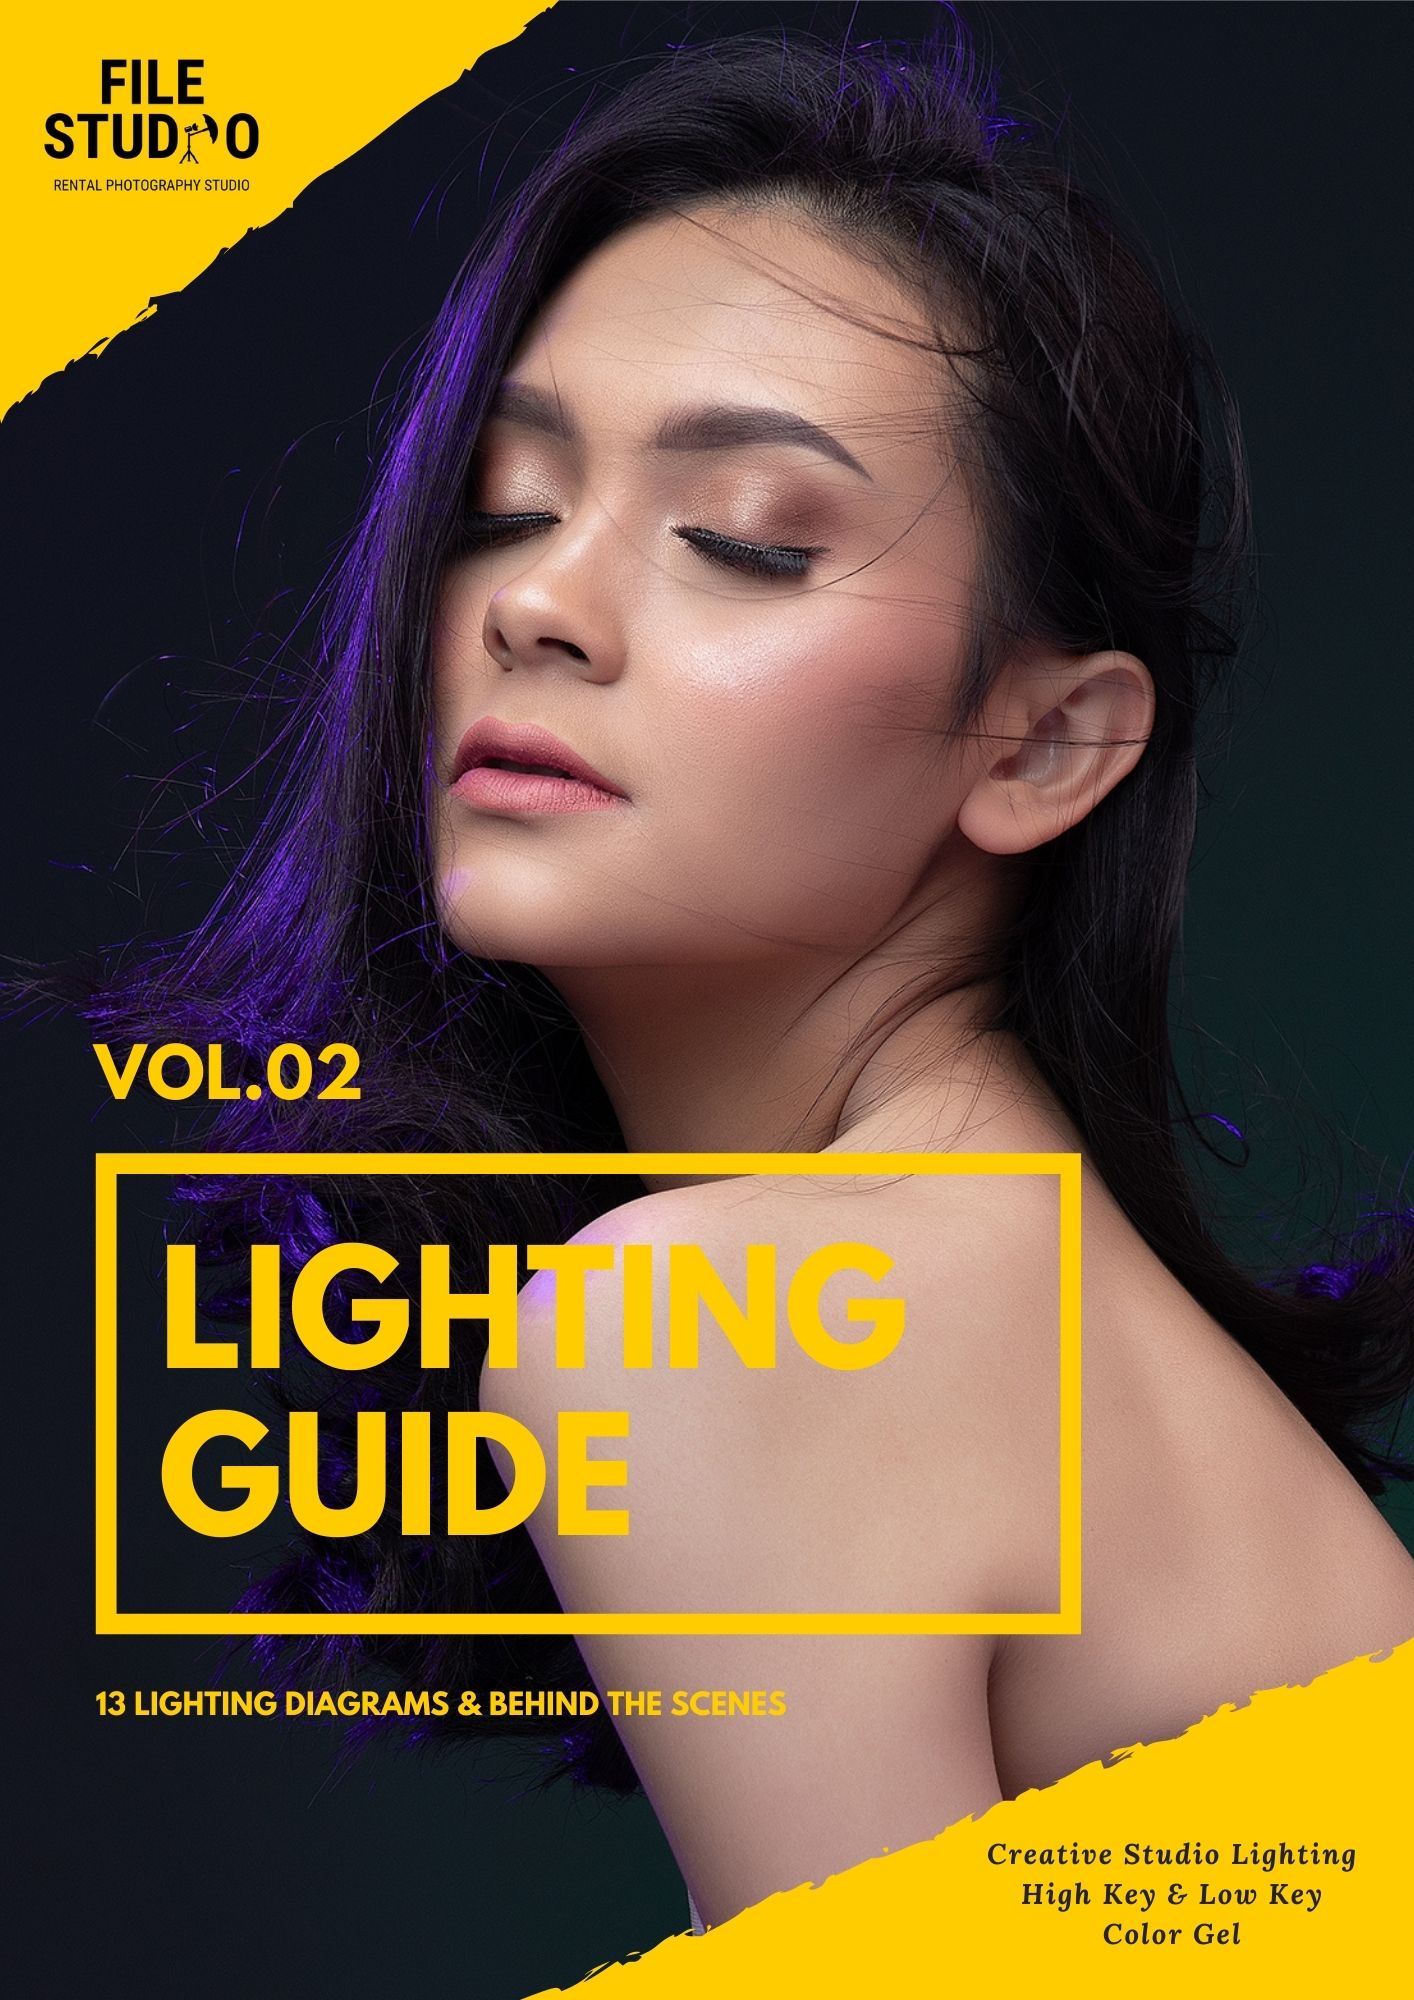 LIGHTING GUIDE VOL 02 File Academy | Kelas Fotografi dan Entrepreneurship